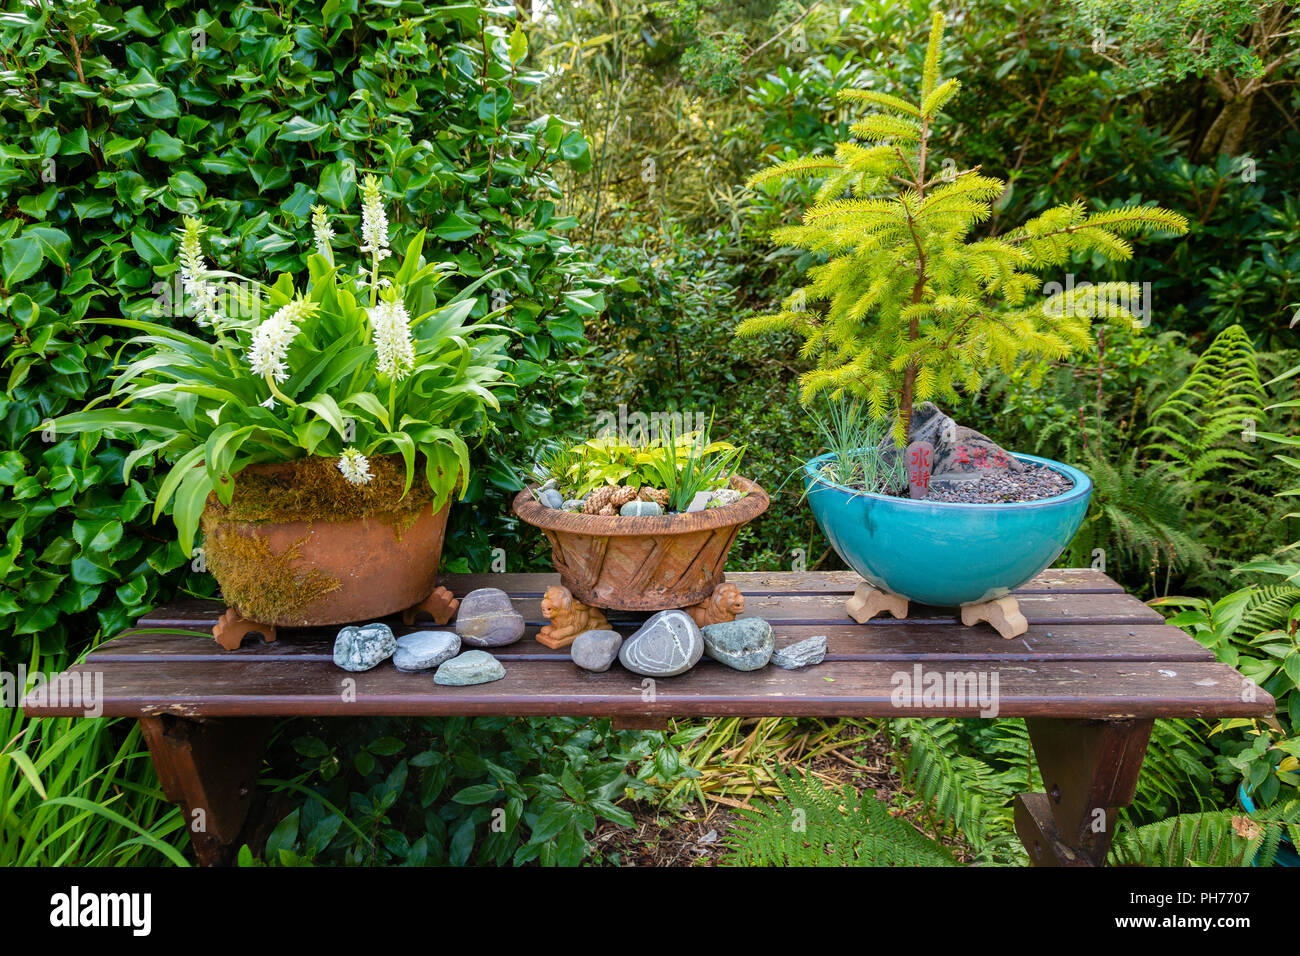 Bonsai Pflanzen in Pflanzmaschinen draußen im Garten am Tisch, Irland  Stockfotografie - Alamy